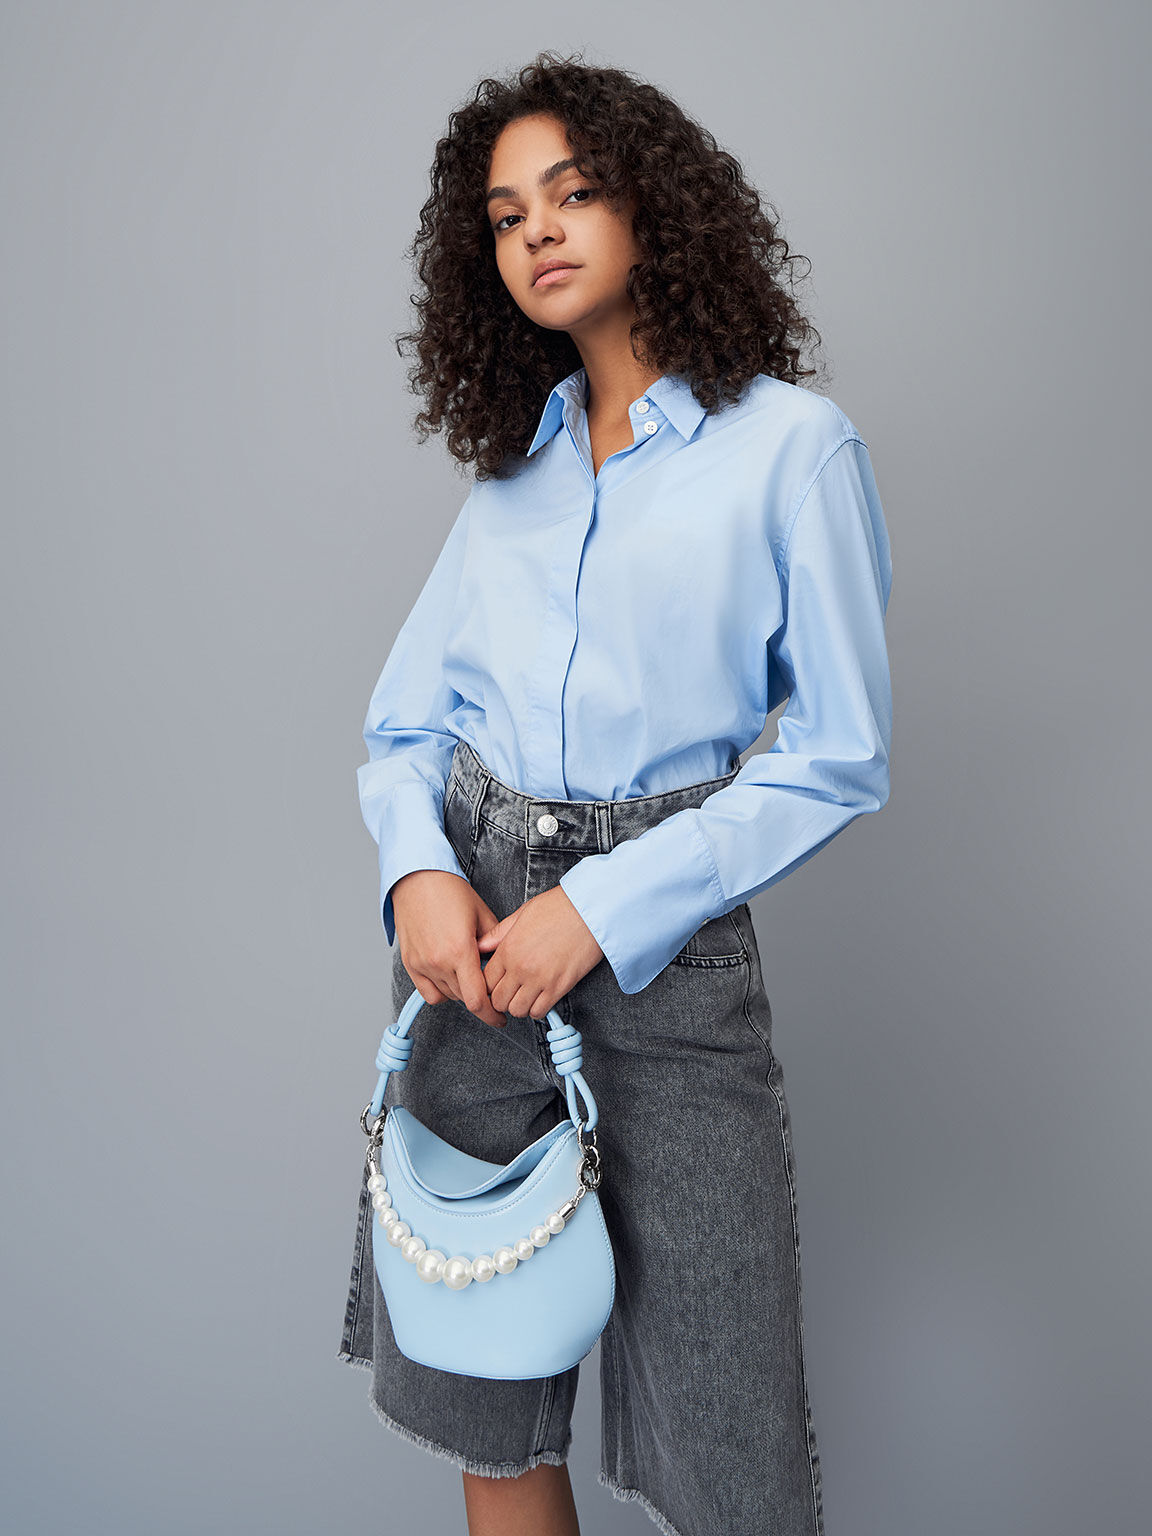 Bead-Embellished Knotted Handle Bag, Light Blue, hi-res